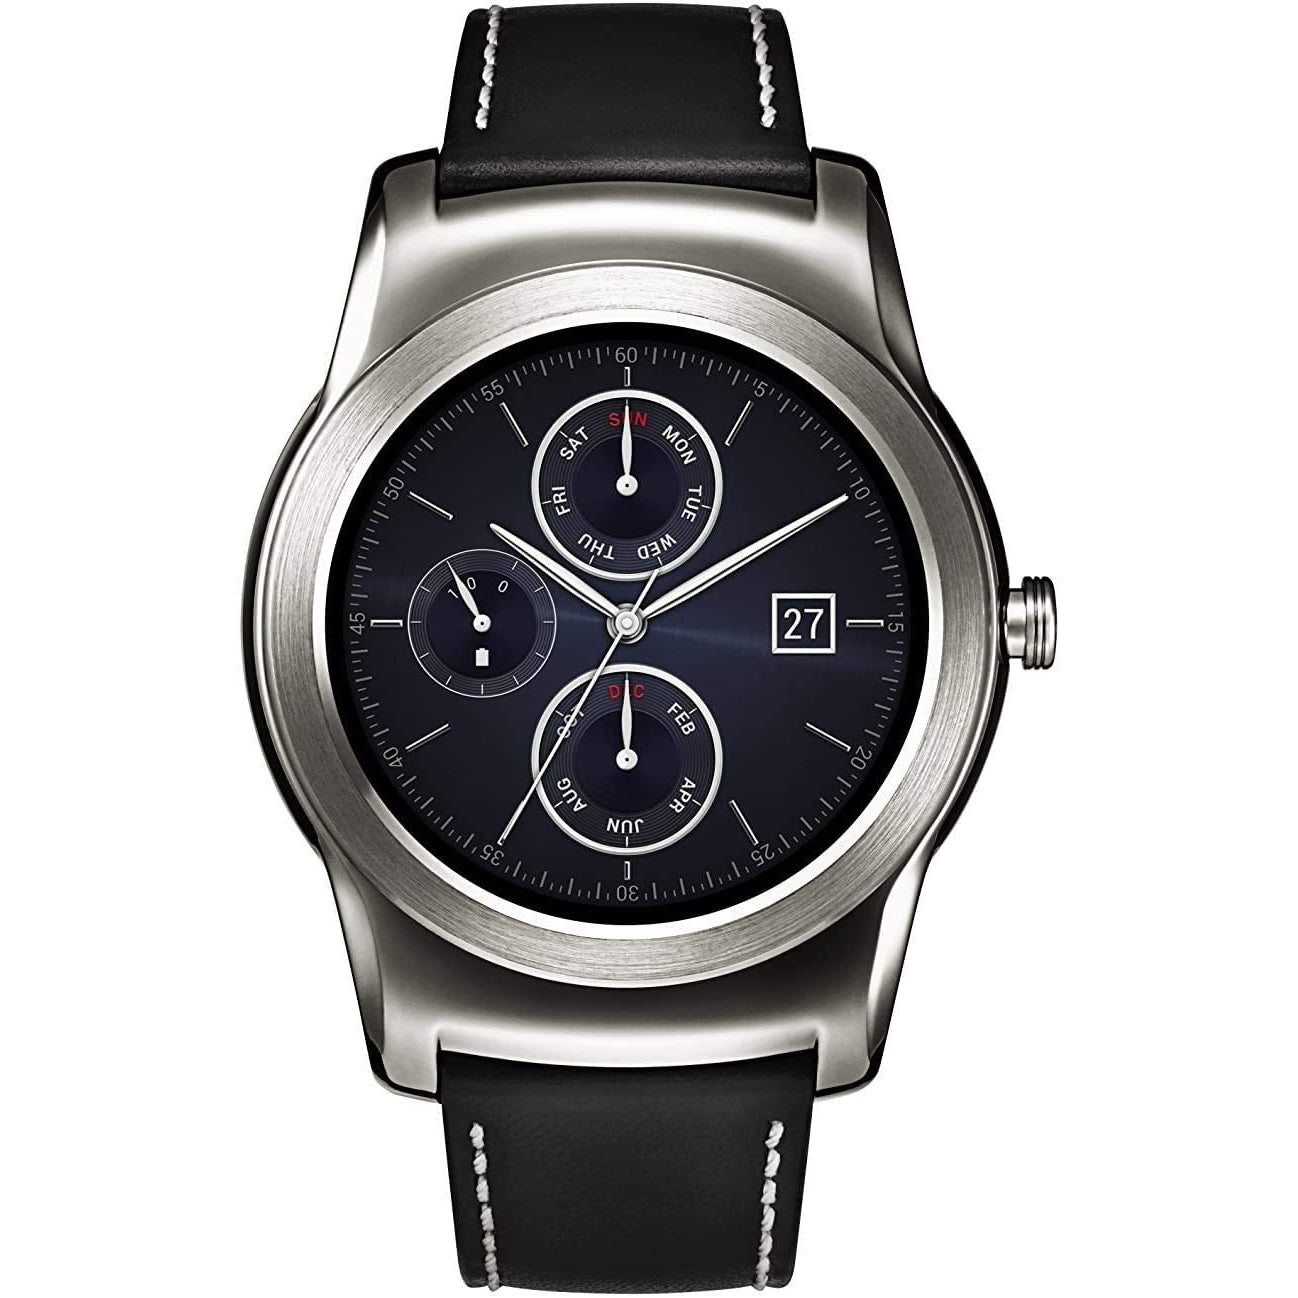 LG Watch Urbane Smartwatch W150 - Black